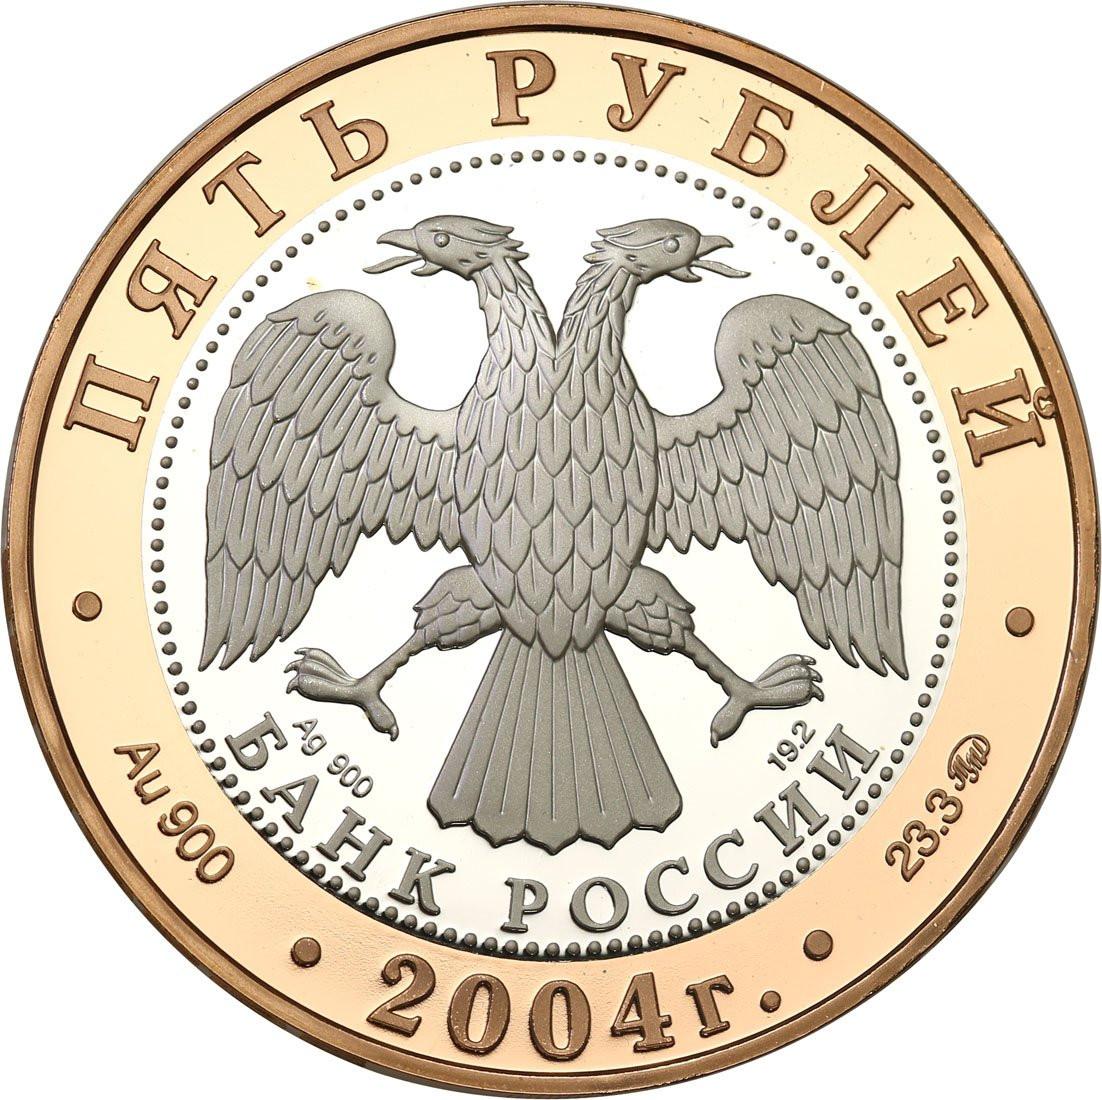 ZSRR/Rosja. 5 rubli 2004 Rostów - złoto, srebro